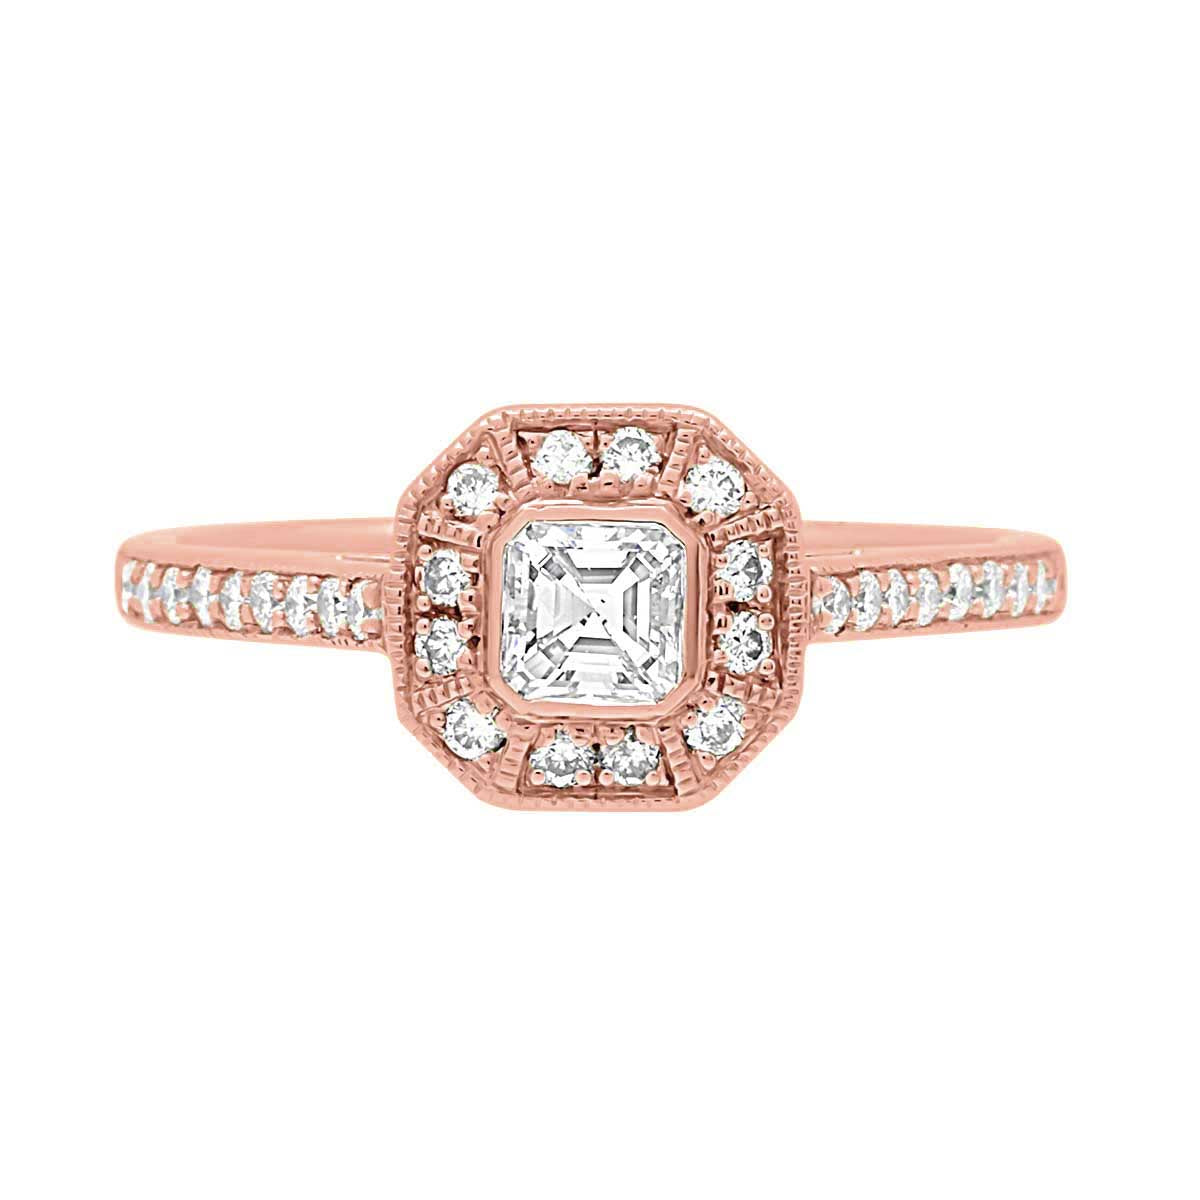 Vintage Design Ring in rose gold